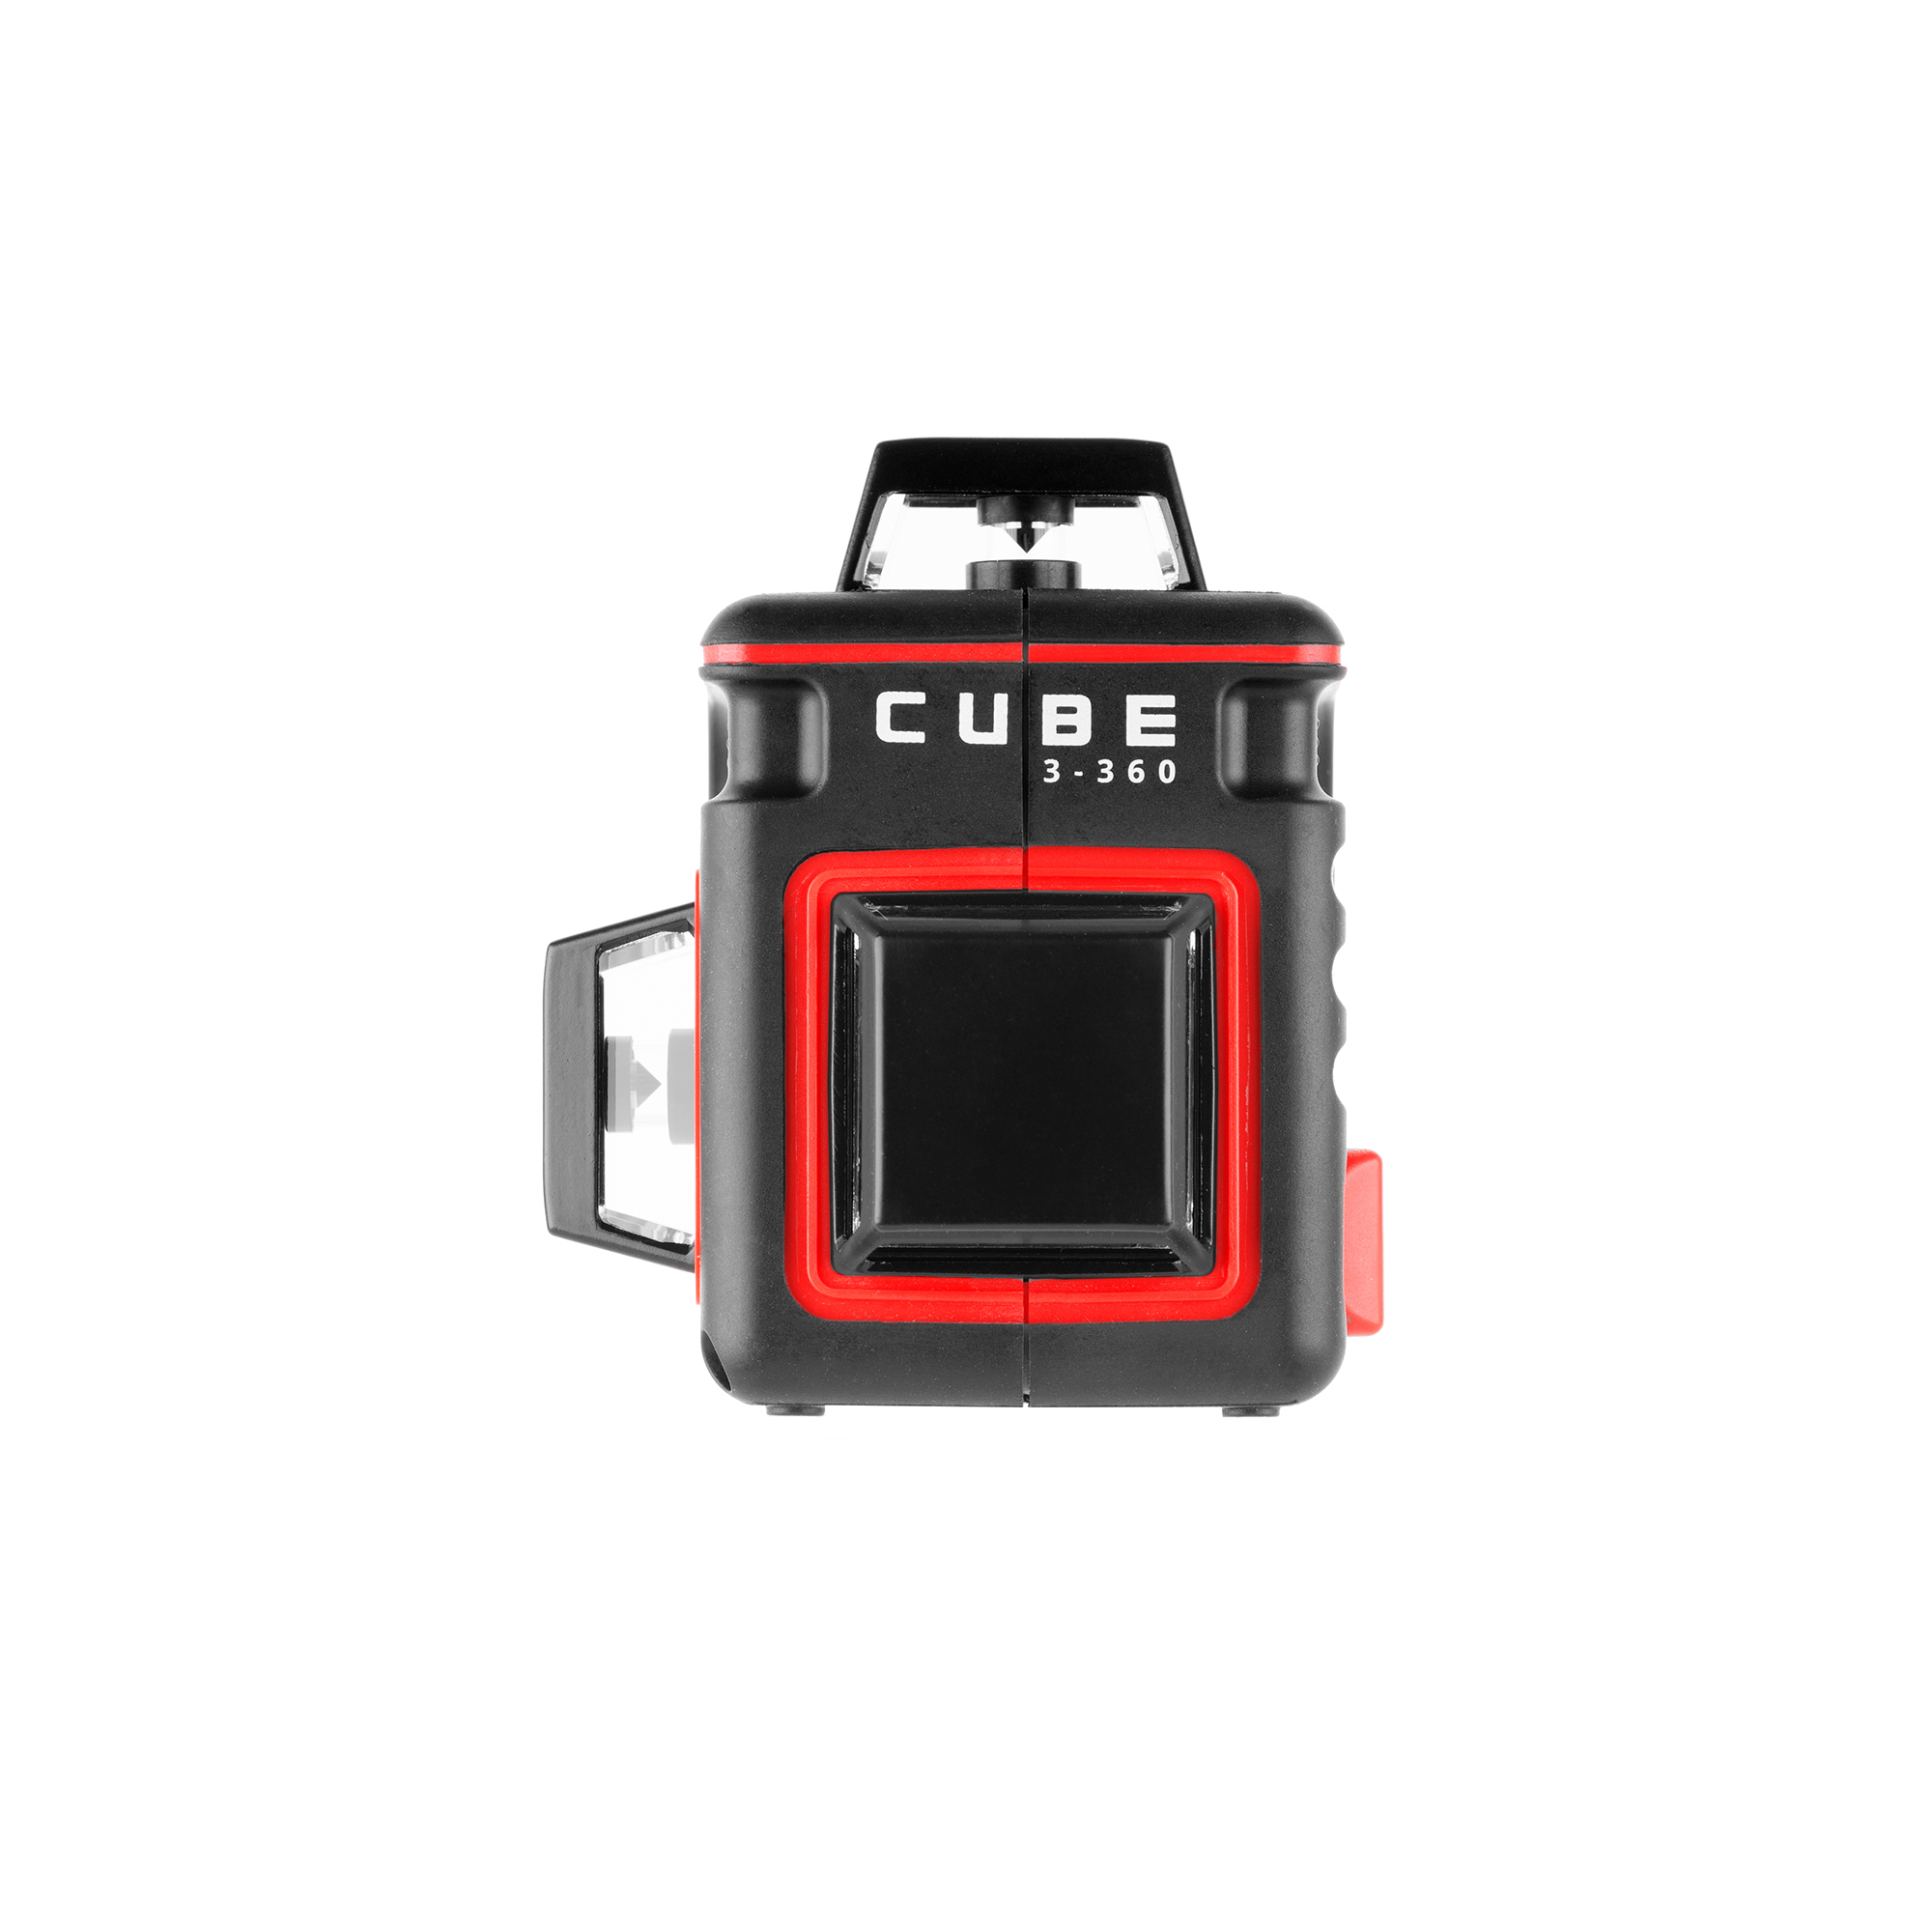 Ada cube 360 basic edition. Ada Cube 3-360 Basic Edition а00559. Лазерный нивелир ada Cube 3-360. Лазерный уровень Cube 3-360 Basic Edition. Лазерный уровень ada Cube 360 Basic Edition.